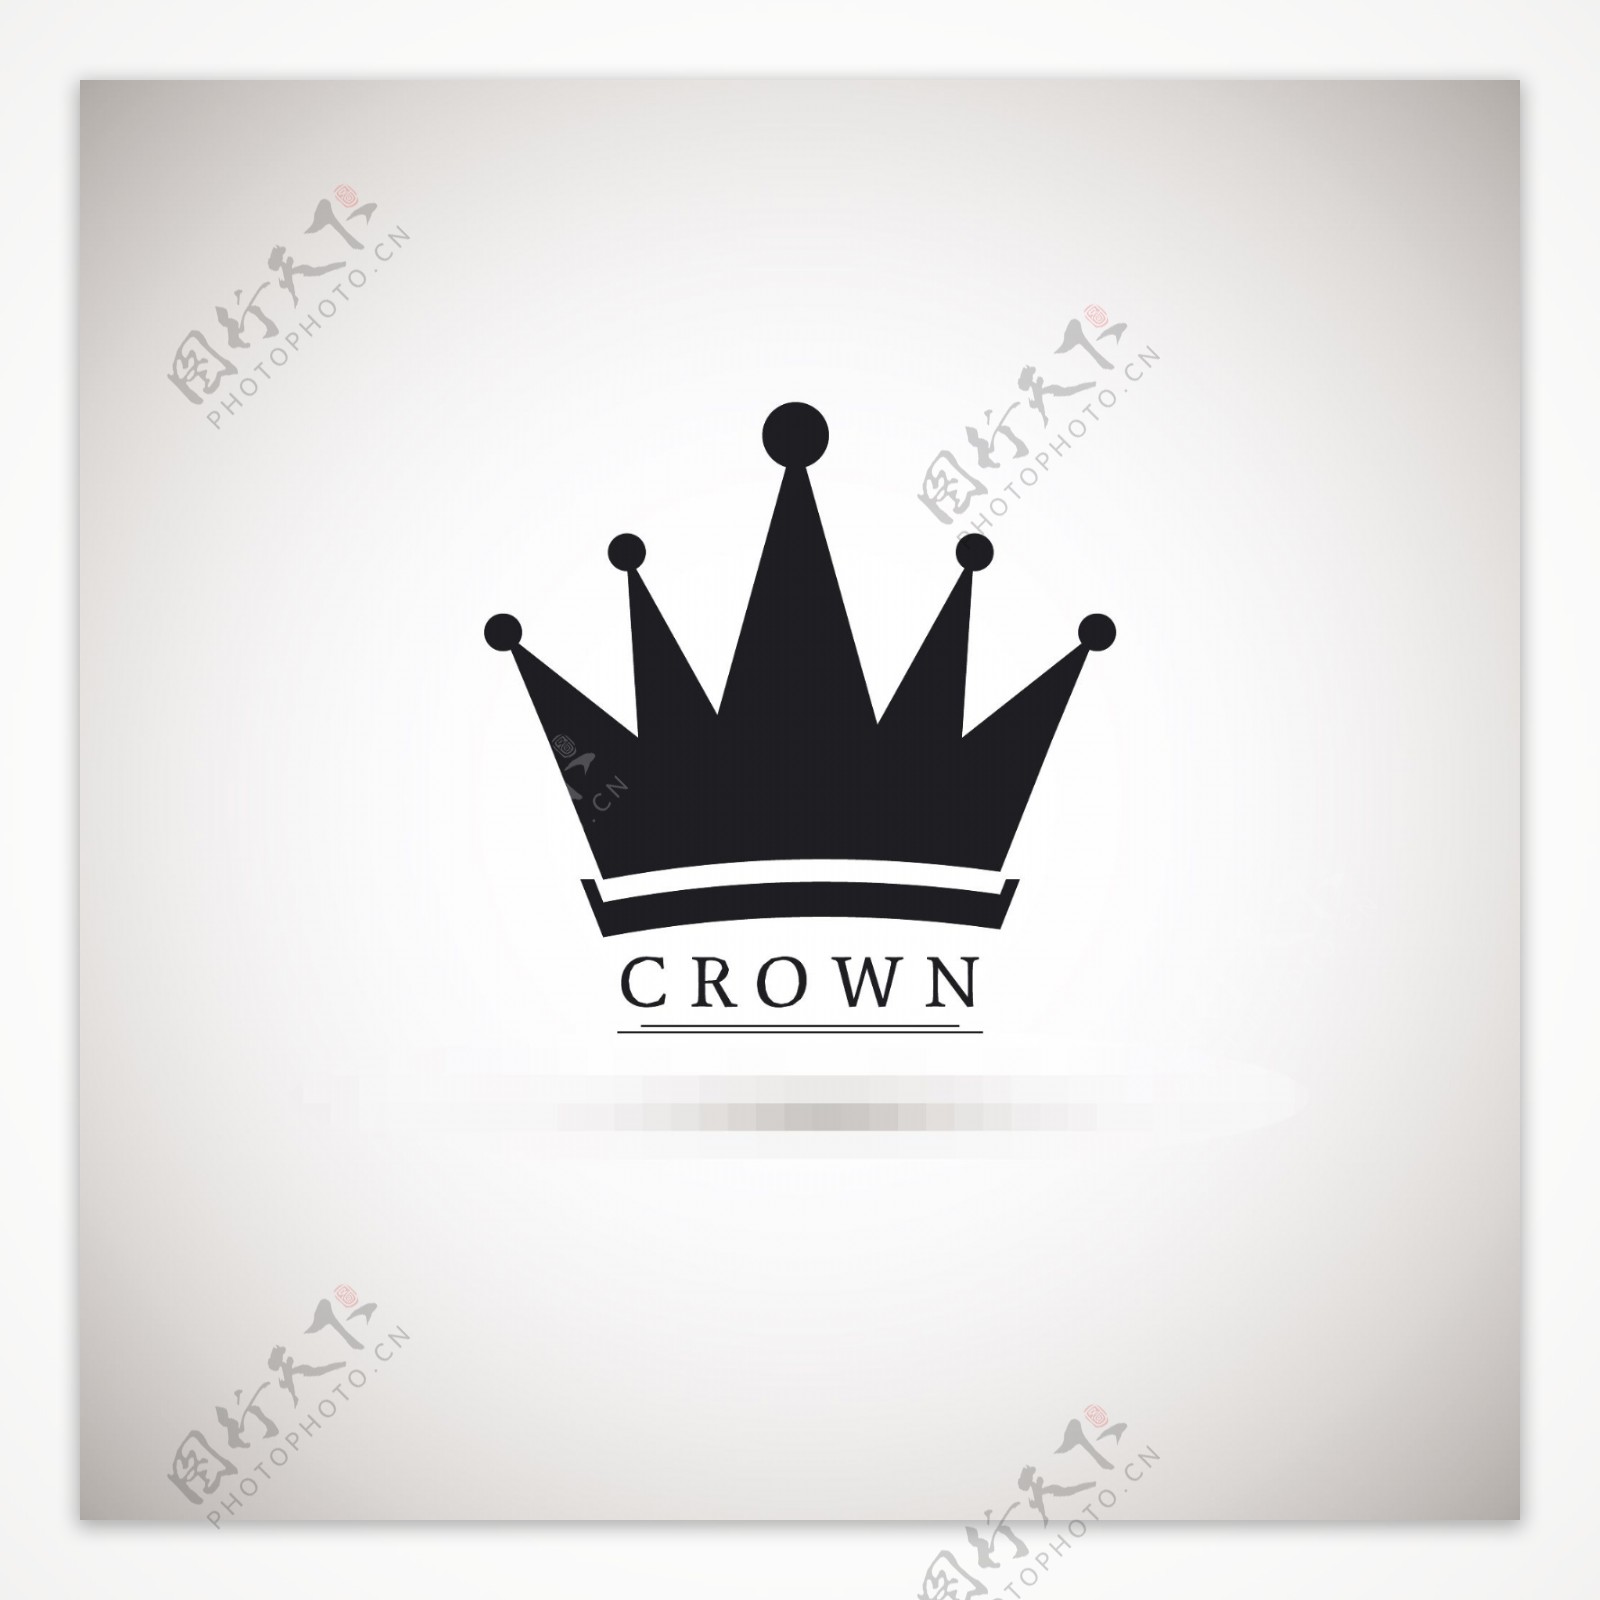 crown黑白简约风格的皇冠图标